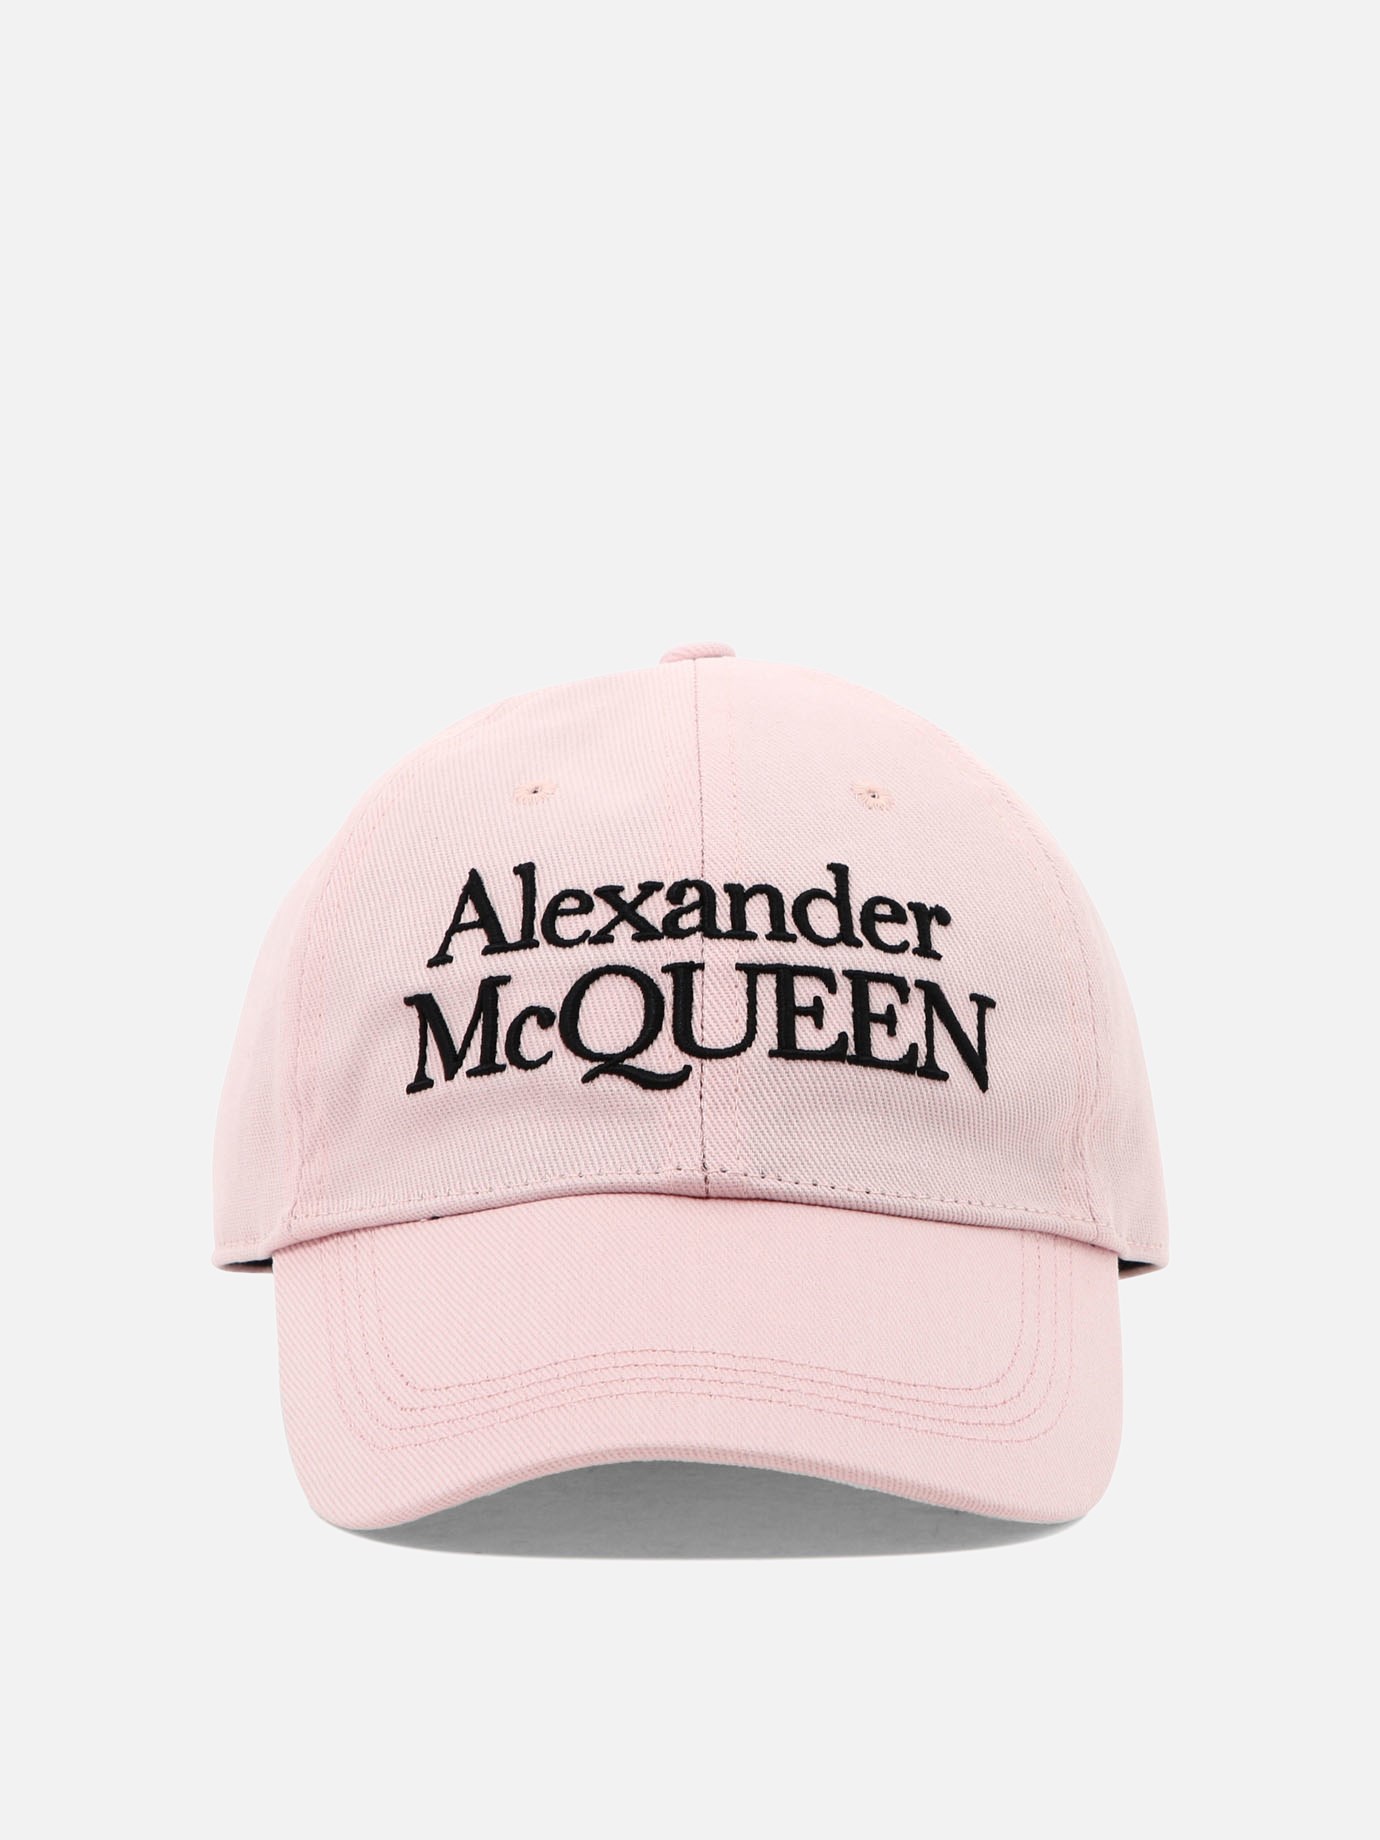  McQueen Signature  capby Alexander McQueen - 0